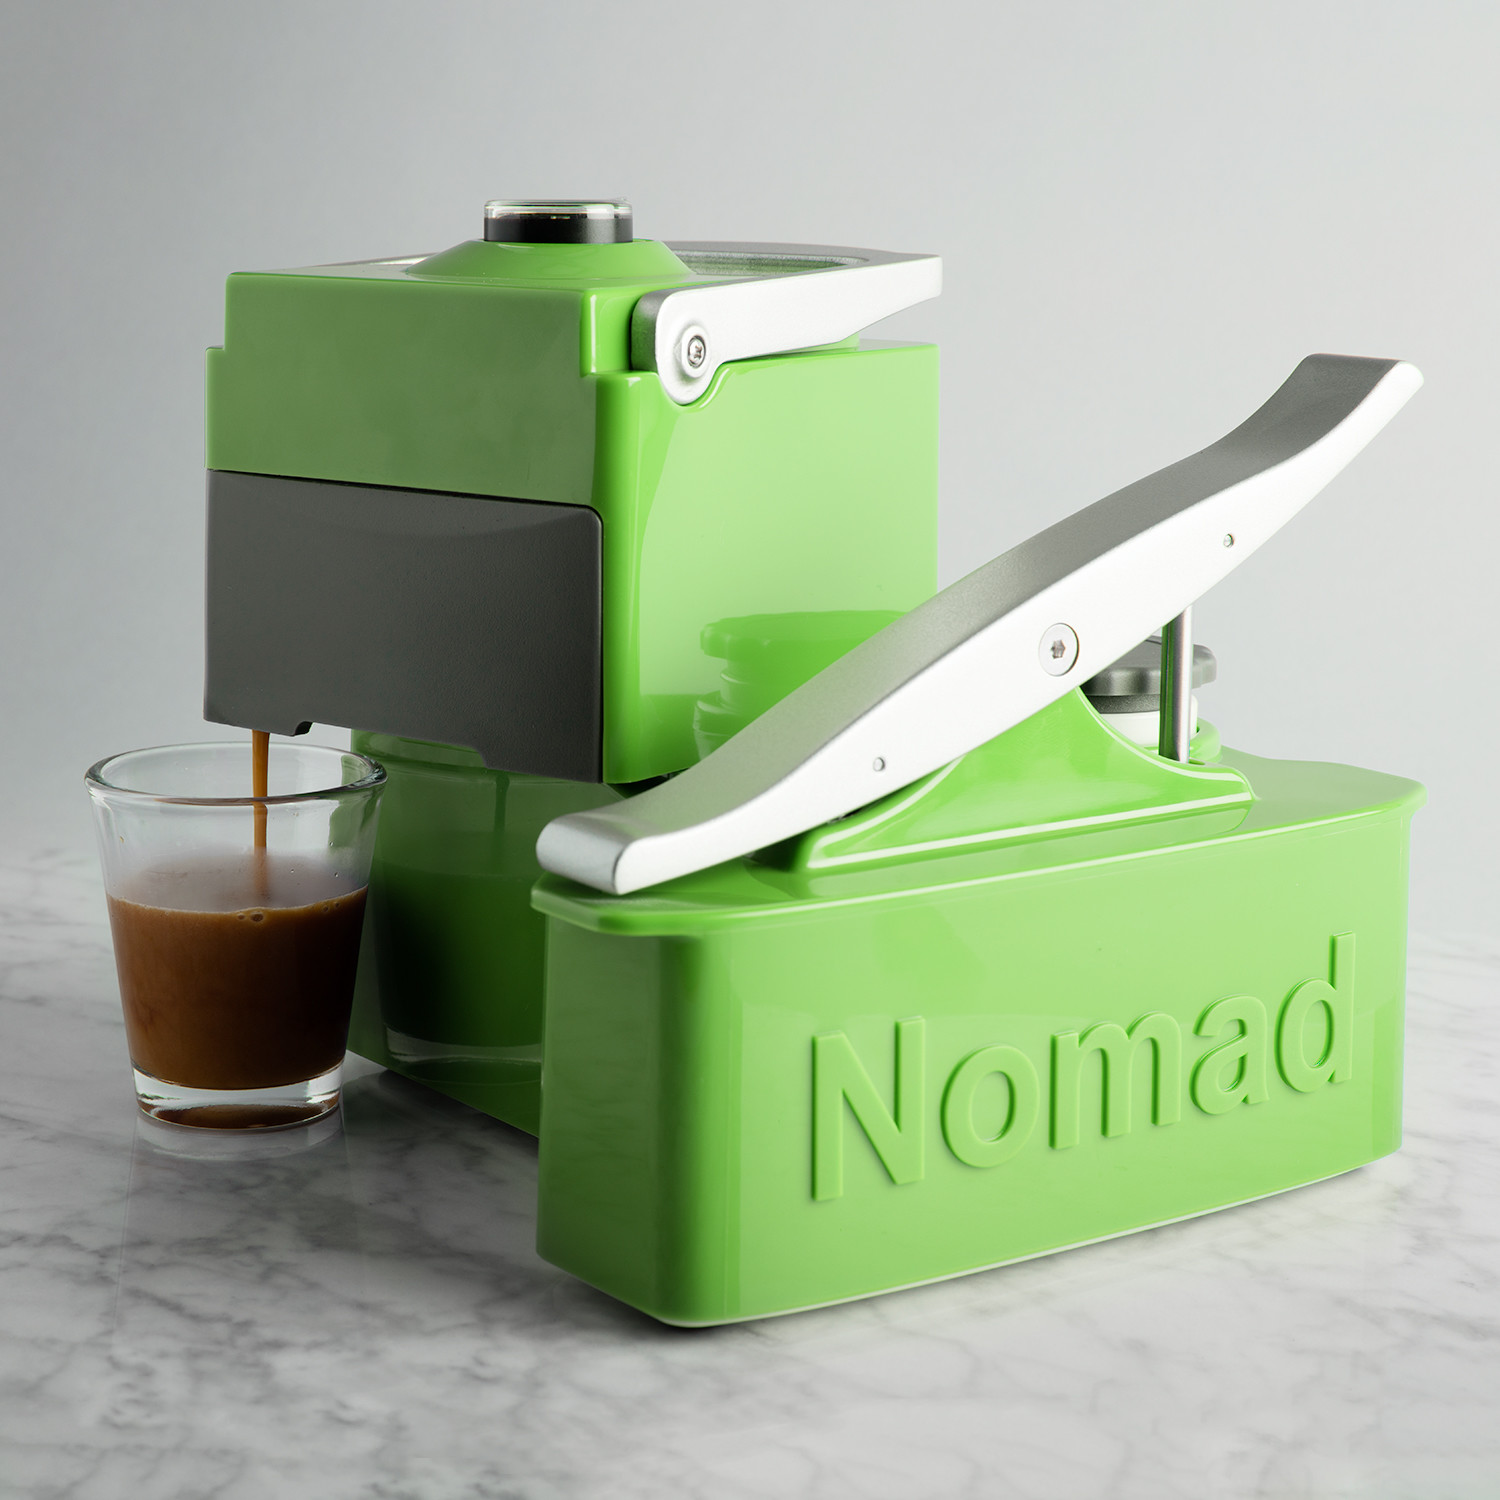 UniTerra Nomad Espresso Machine